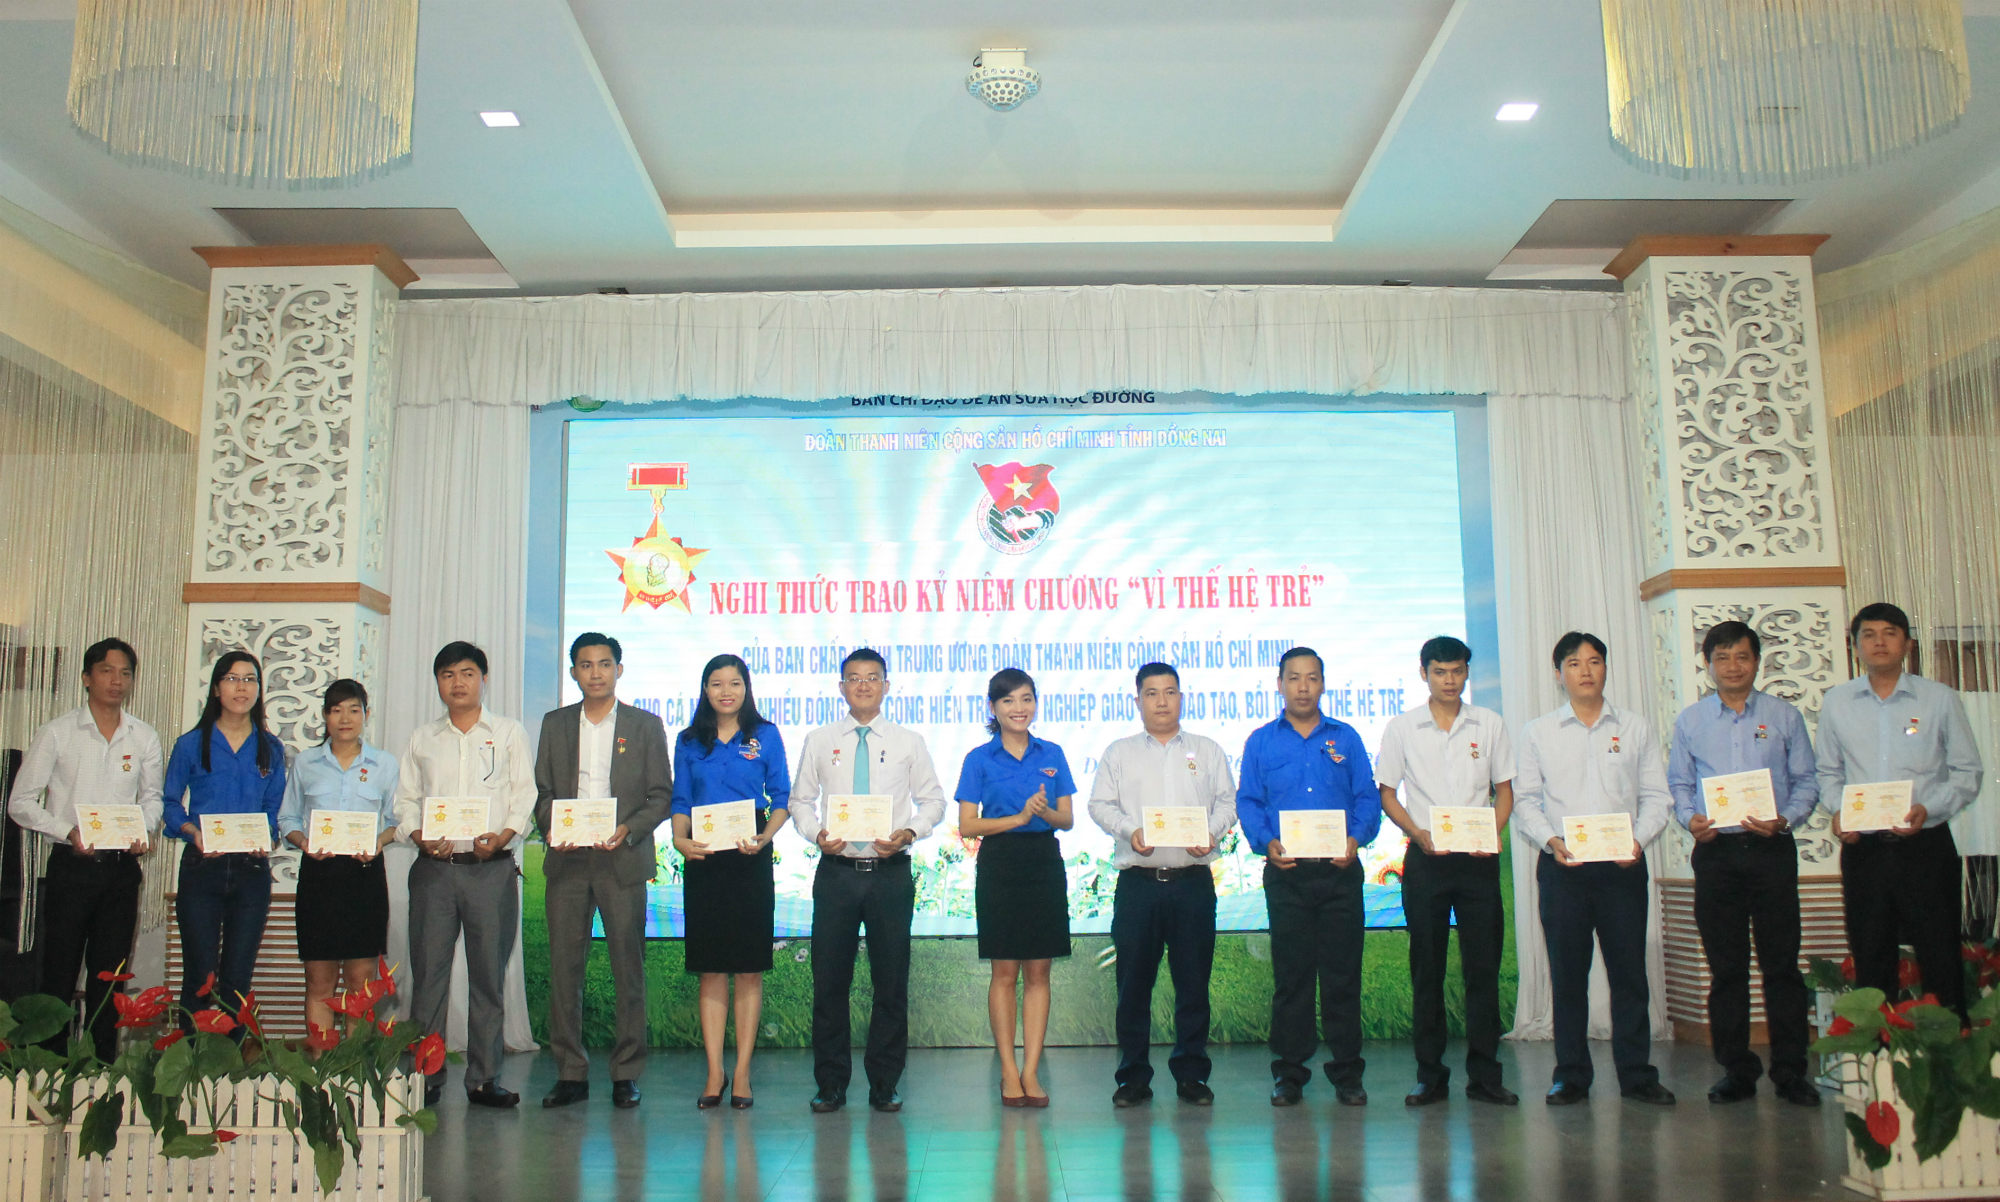 Dịp này, BCH Trung ương Đoàn TNCS Hồ Chí Minh đã trao kỷ niệm chương “Vì thế hệ trẻ” cho 52 cá nhân có nhiều đóng góp, cống hiến trong sự nghiệp giáo dục, đào tạo, bồi dưỡng thế hệ trẻ Việt Nam của tỉnh Đồng Nai.